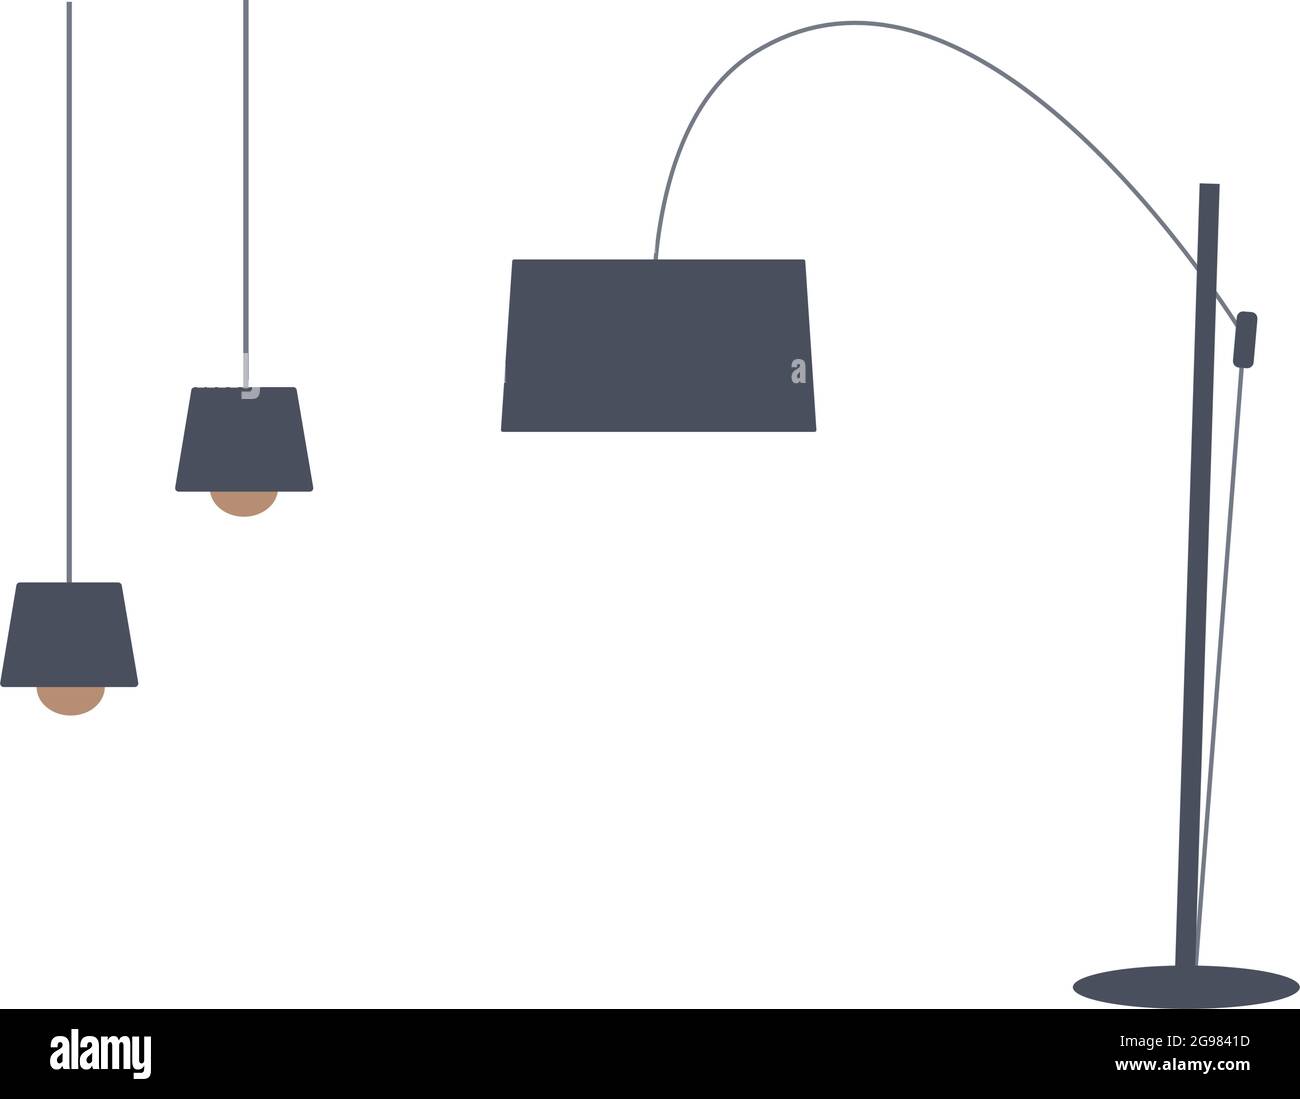 Illustration vectorielle de style plat : lampadaire et lampes de couleur grise sur fond blanc Illustration de Vecteur